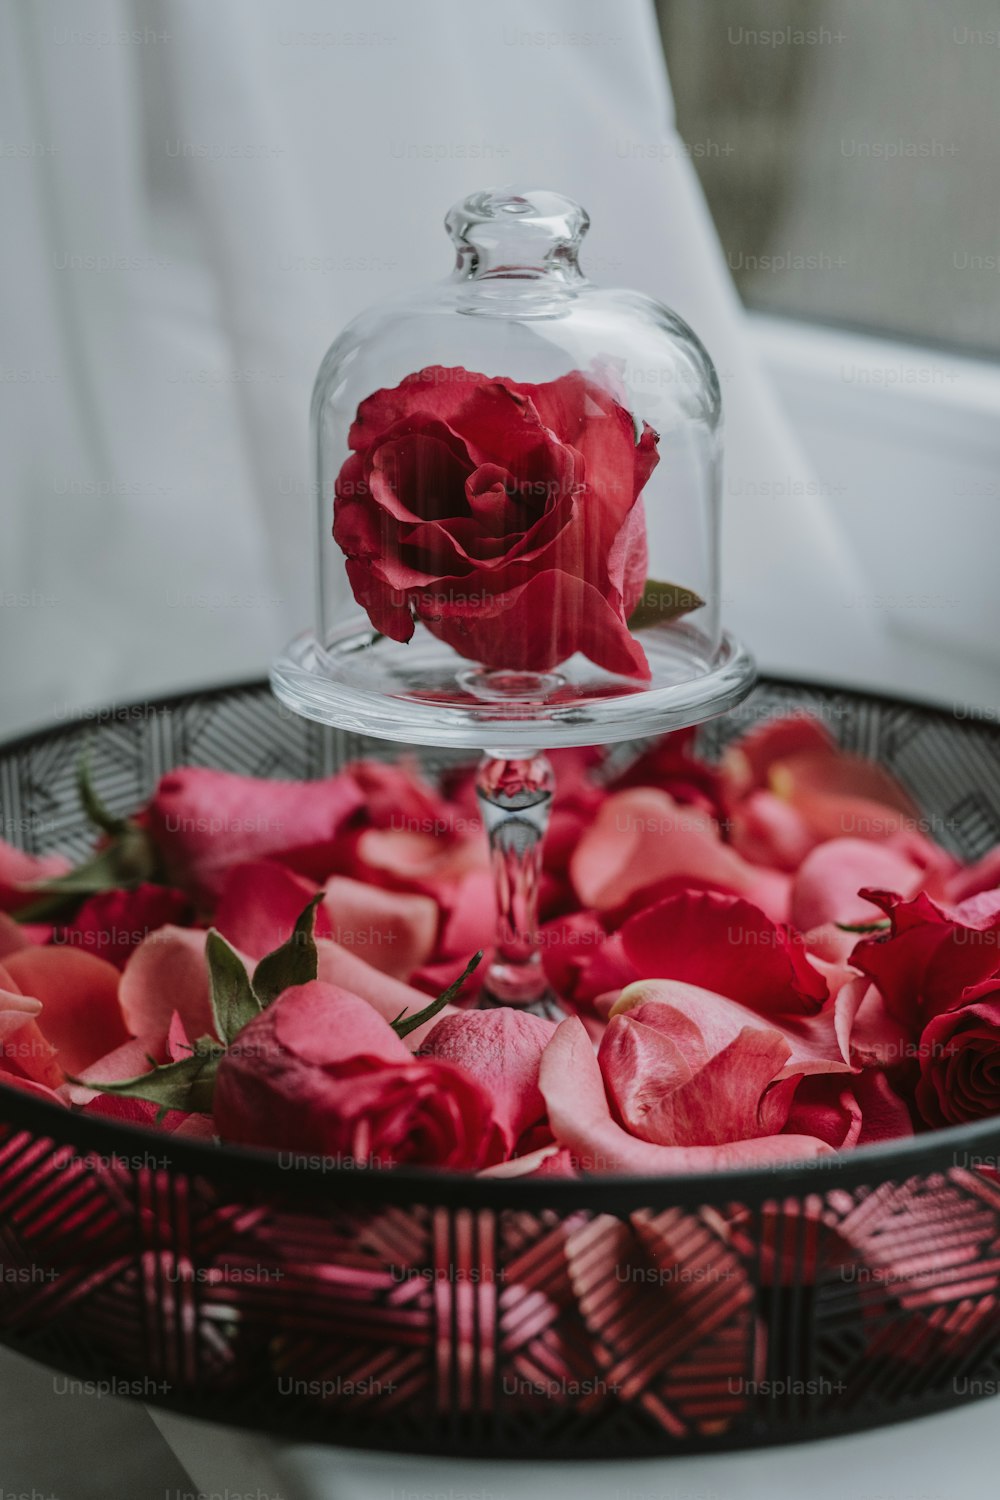 un clochel de vidrio con una rosa roja en él